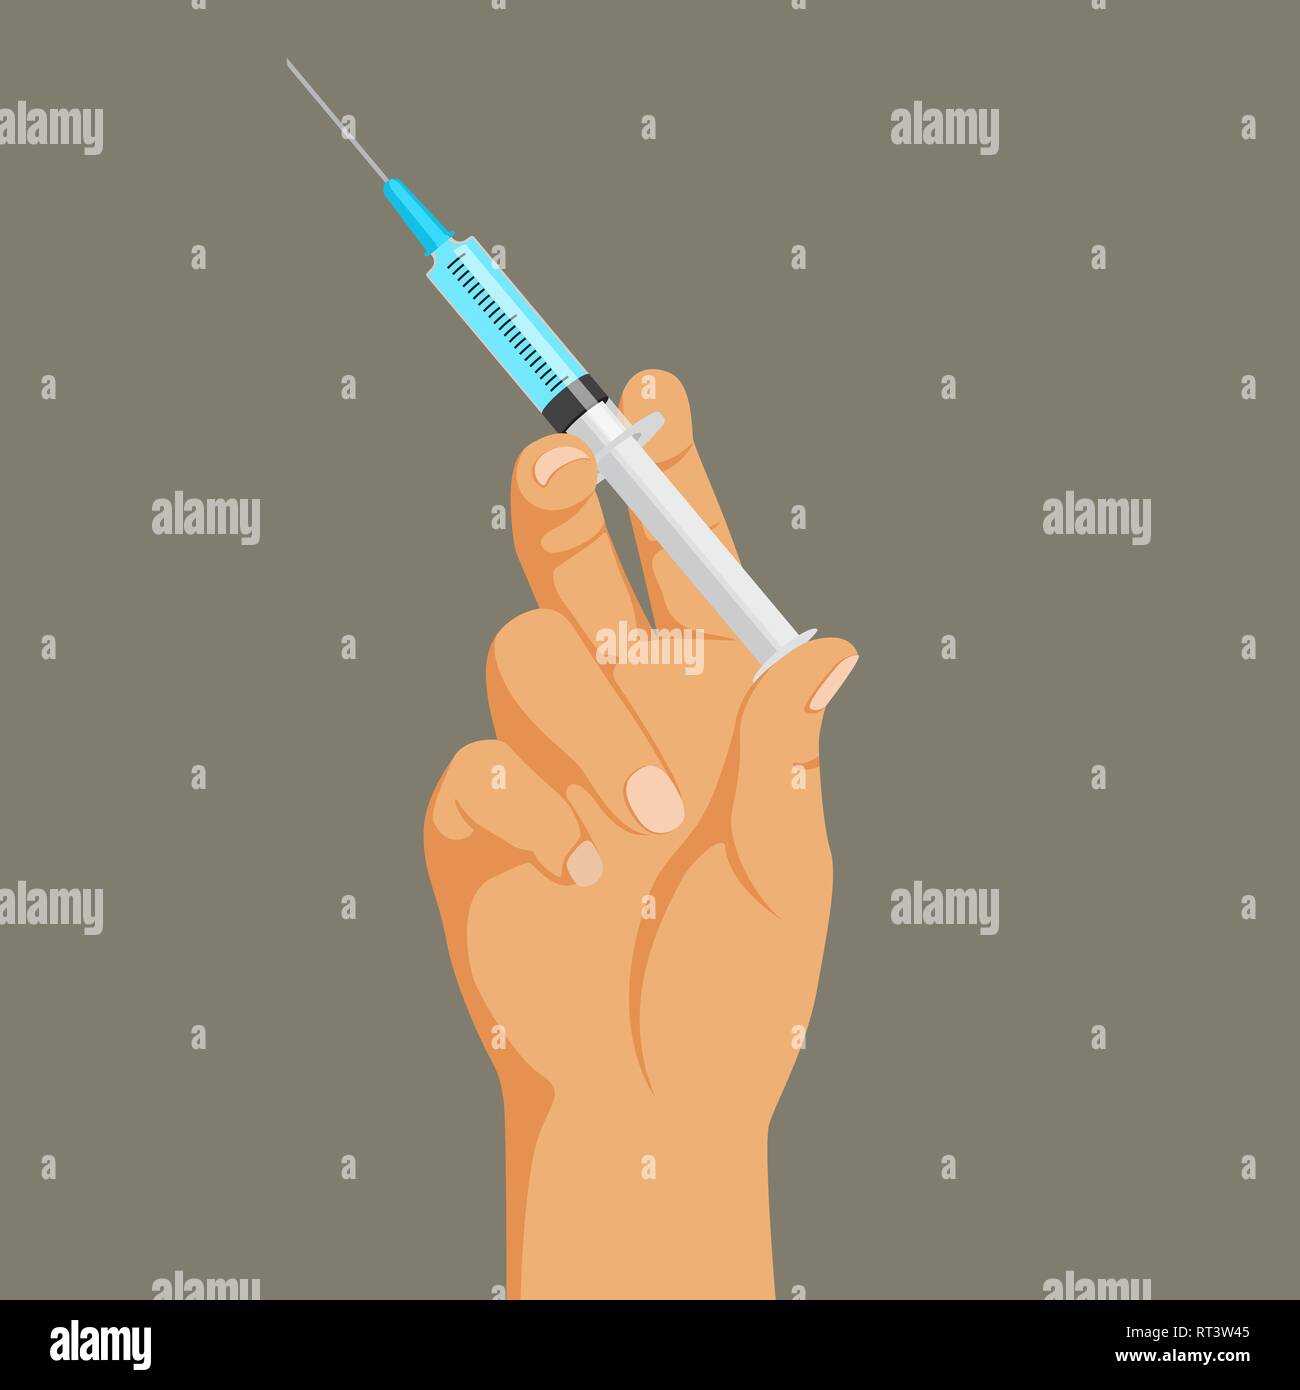 Drogensucht Konzept, Hand mit Spritze, Heroin Abhängigkeit, illegale Einspritzung, Vector Illustration. Stock Vektor